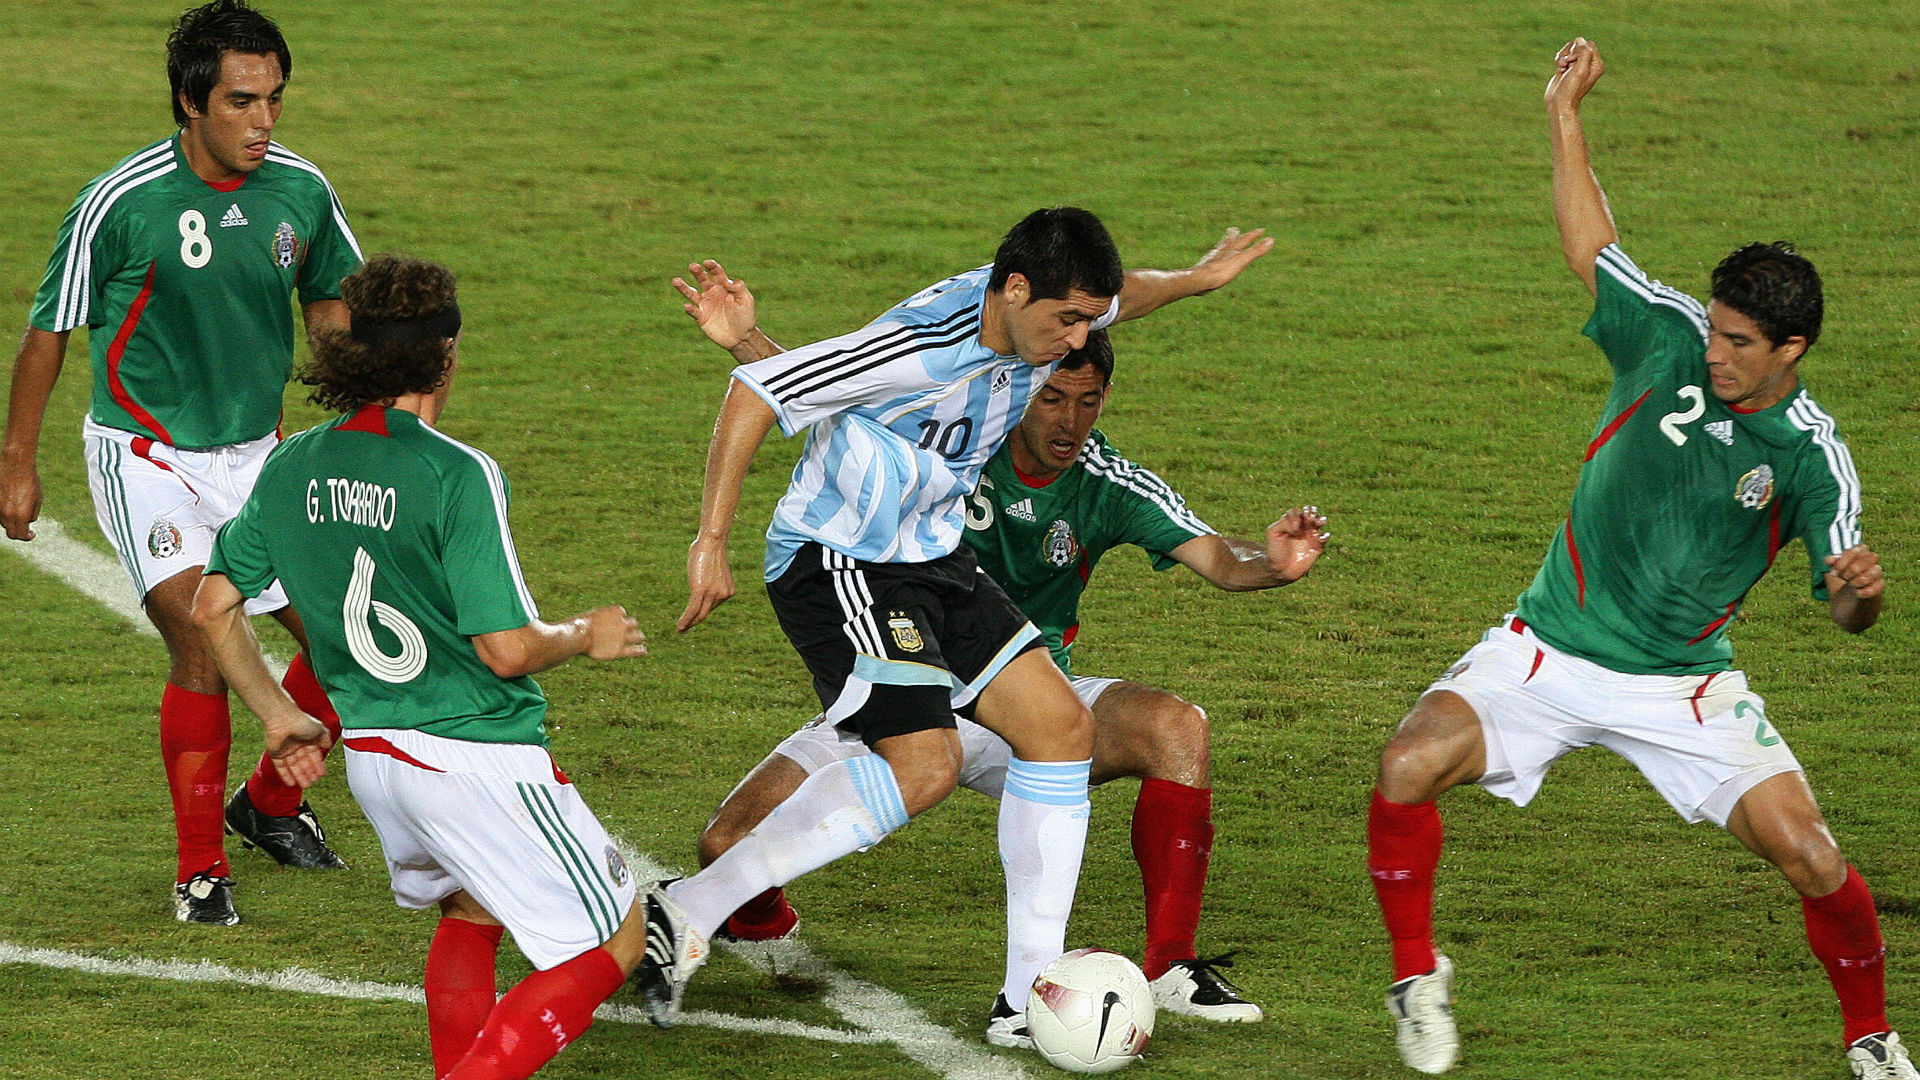 México vs. Argentina Resultados, estadísticas e historial. Resultados